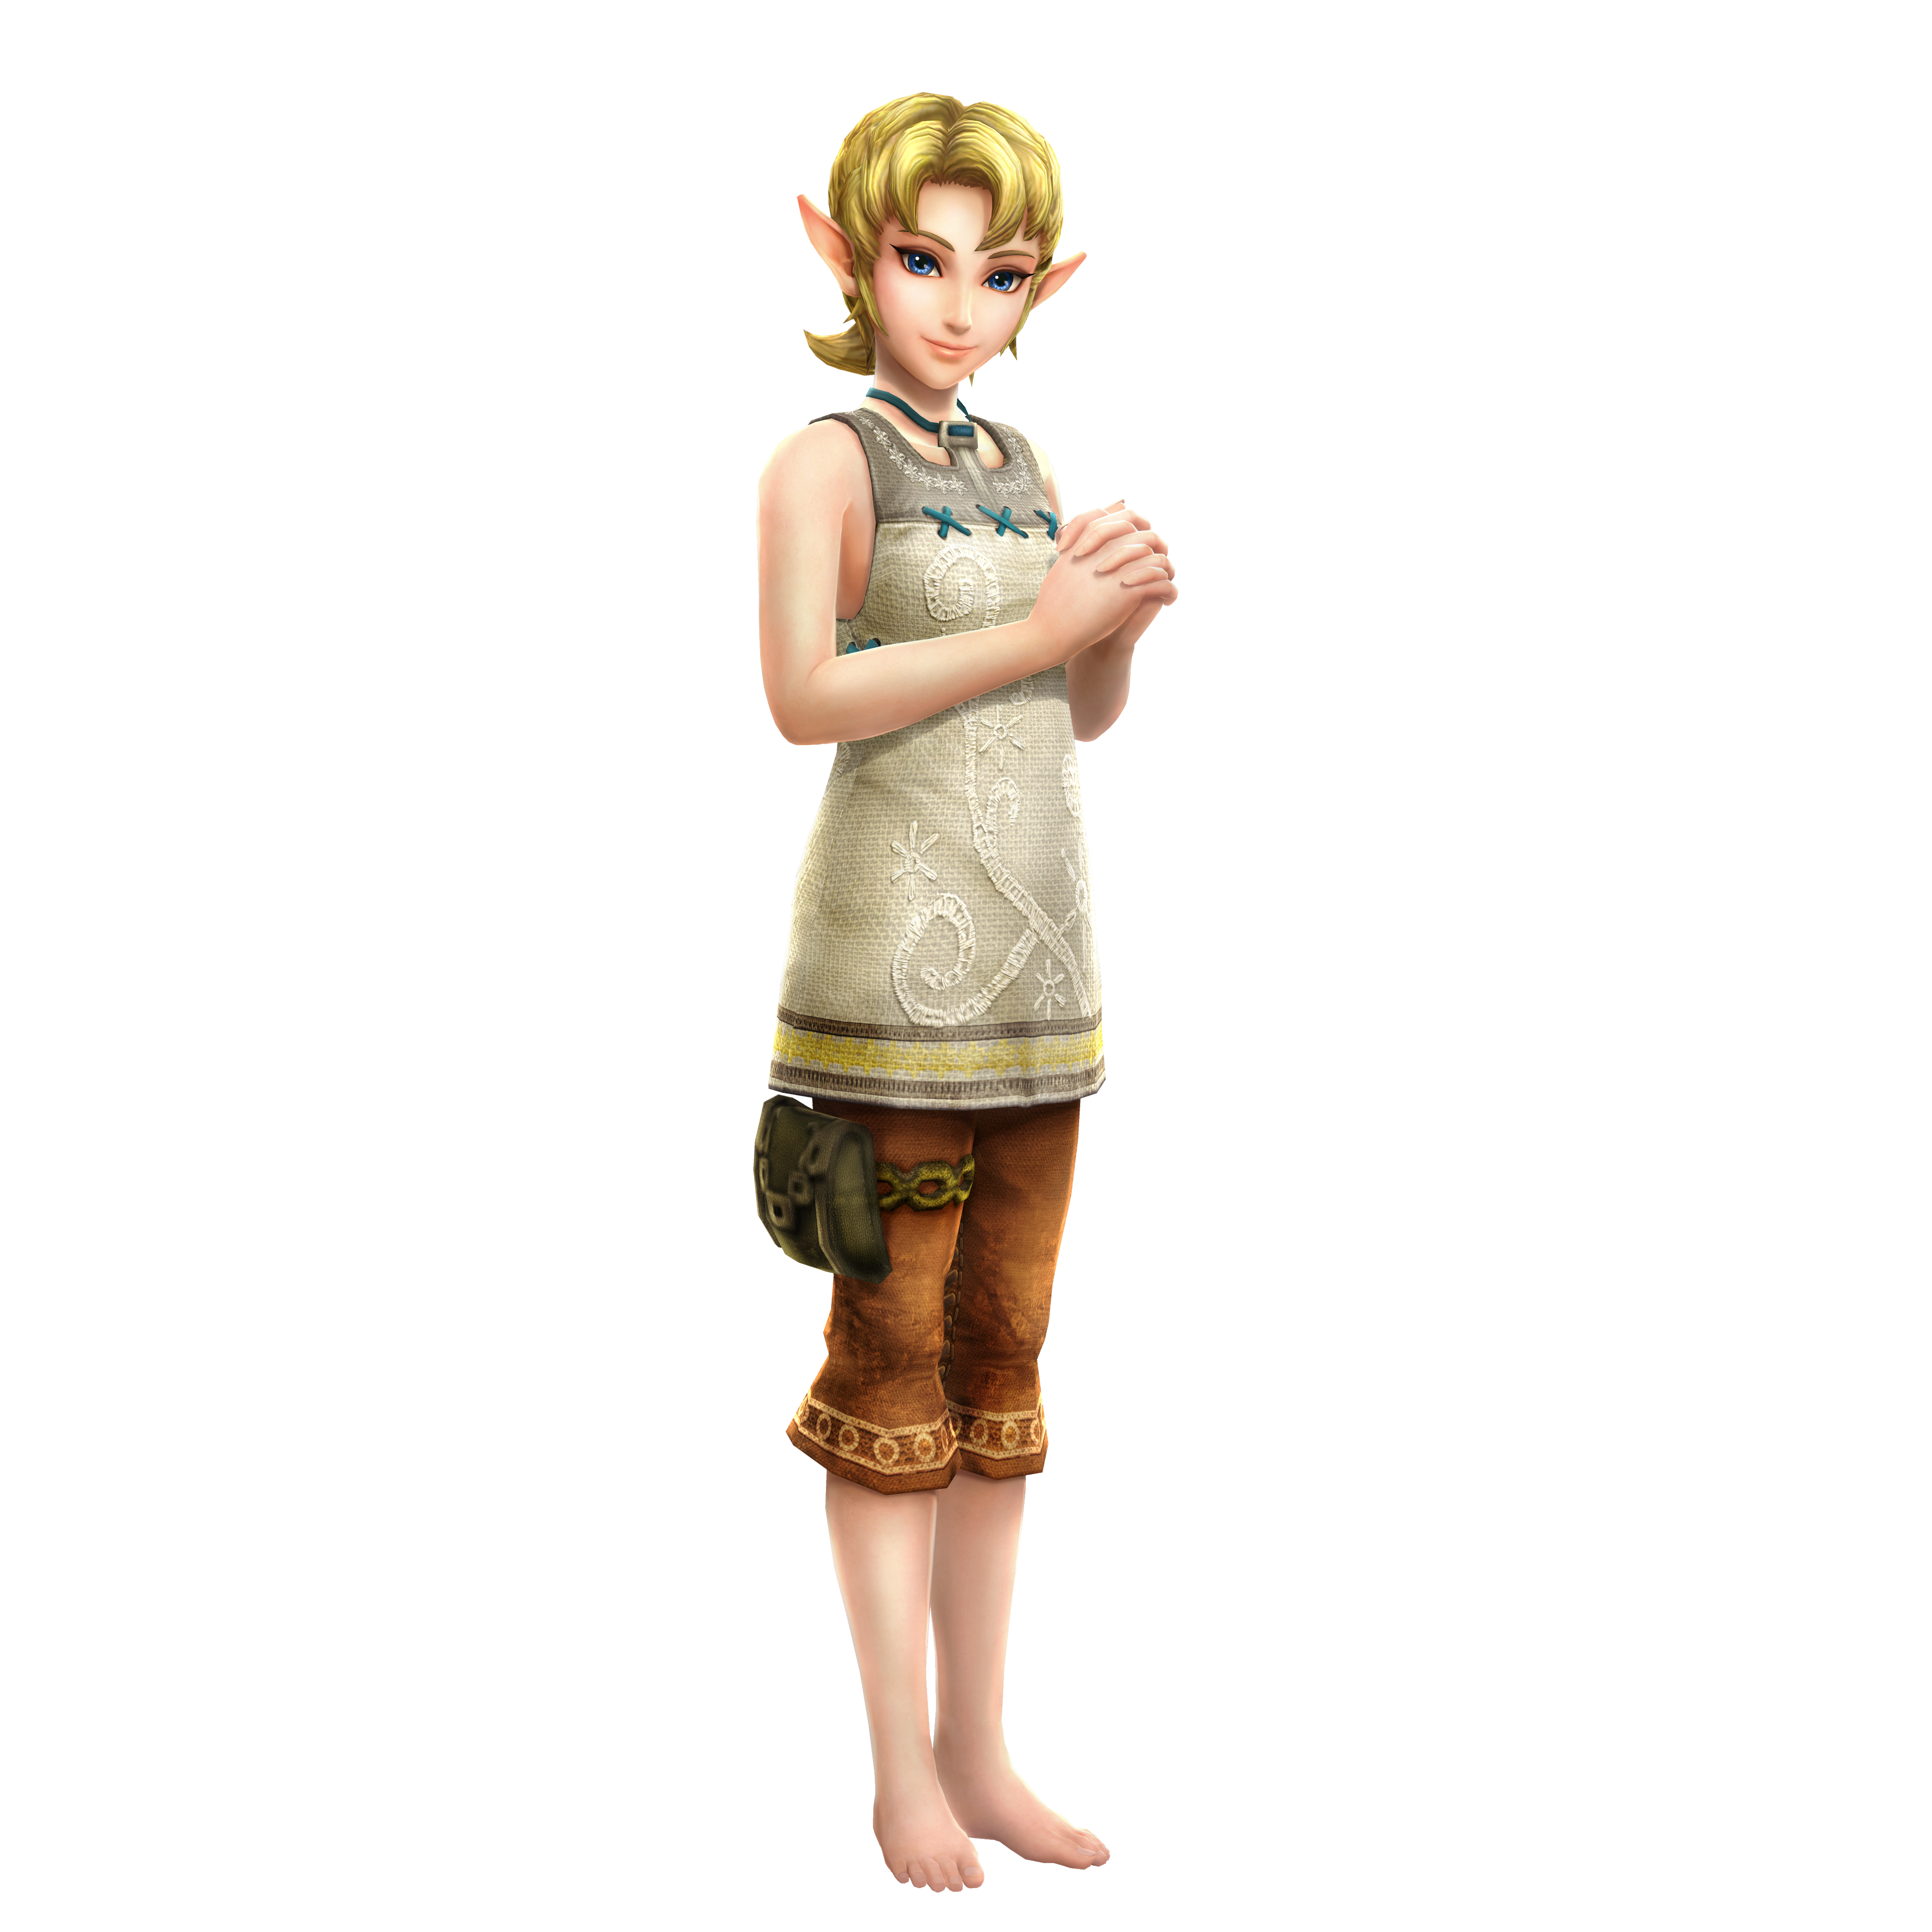 Zelda as Ilia